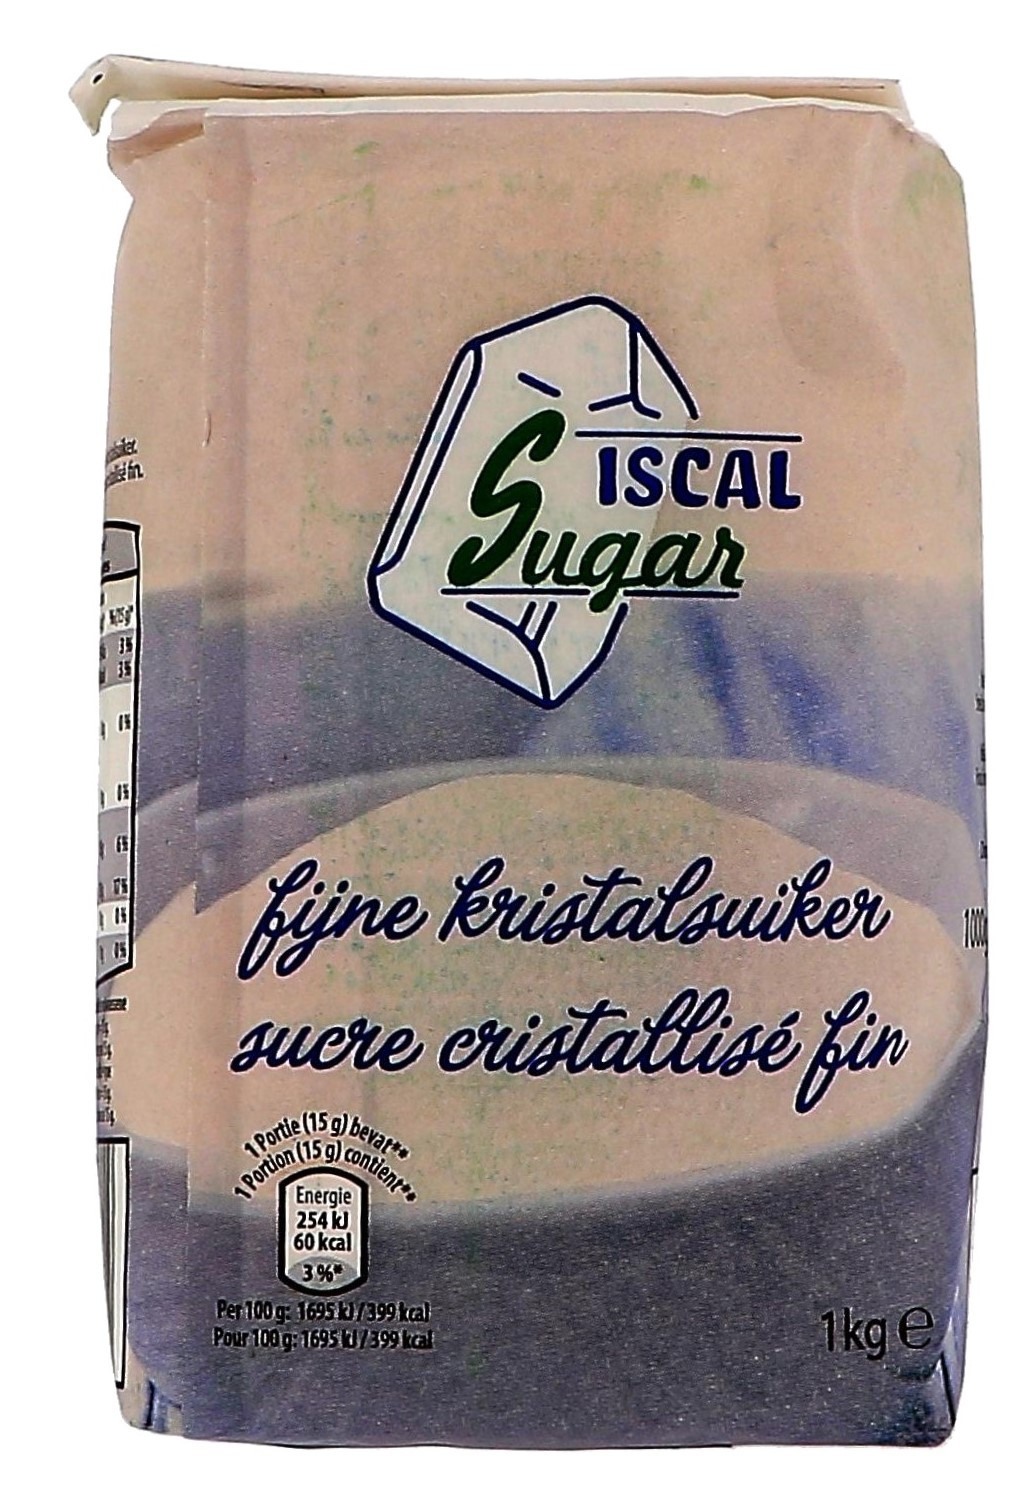 Sucre Cristallise fin 1kg Iscal Sugar - Nevejan